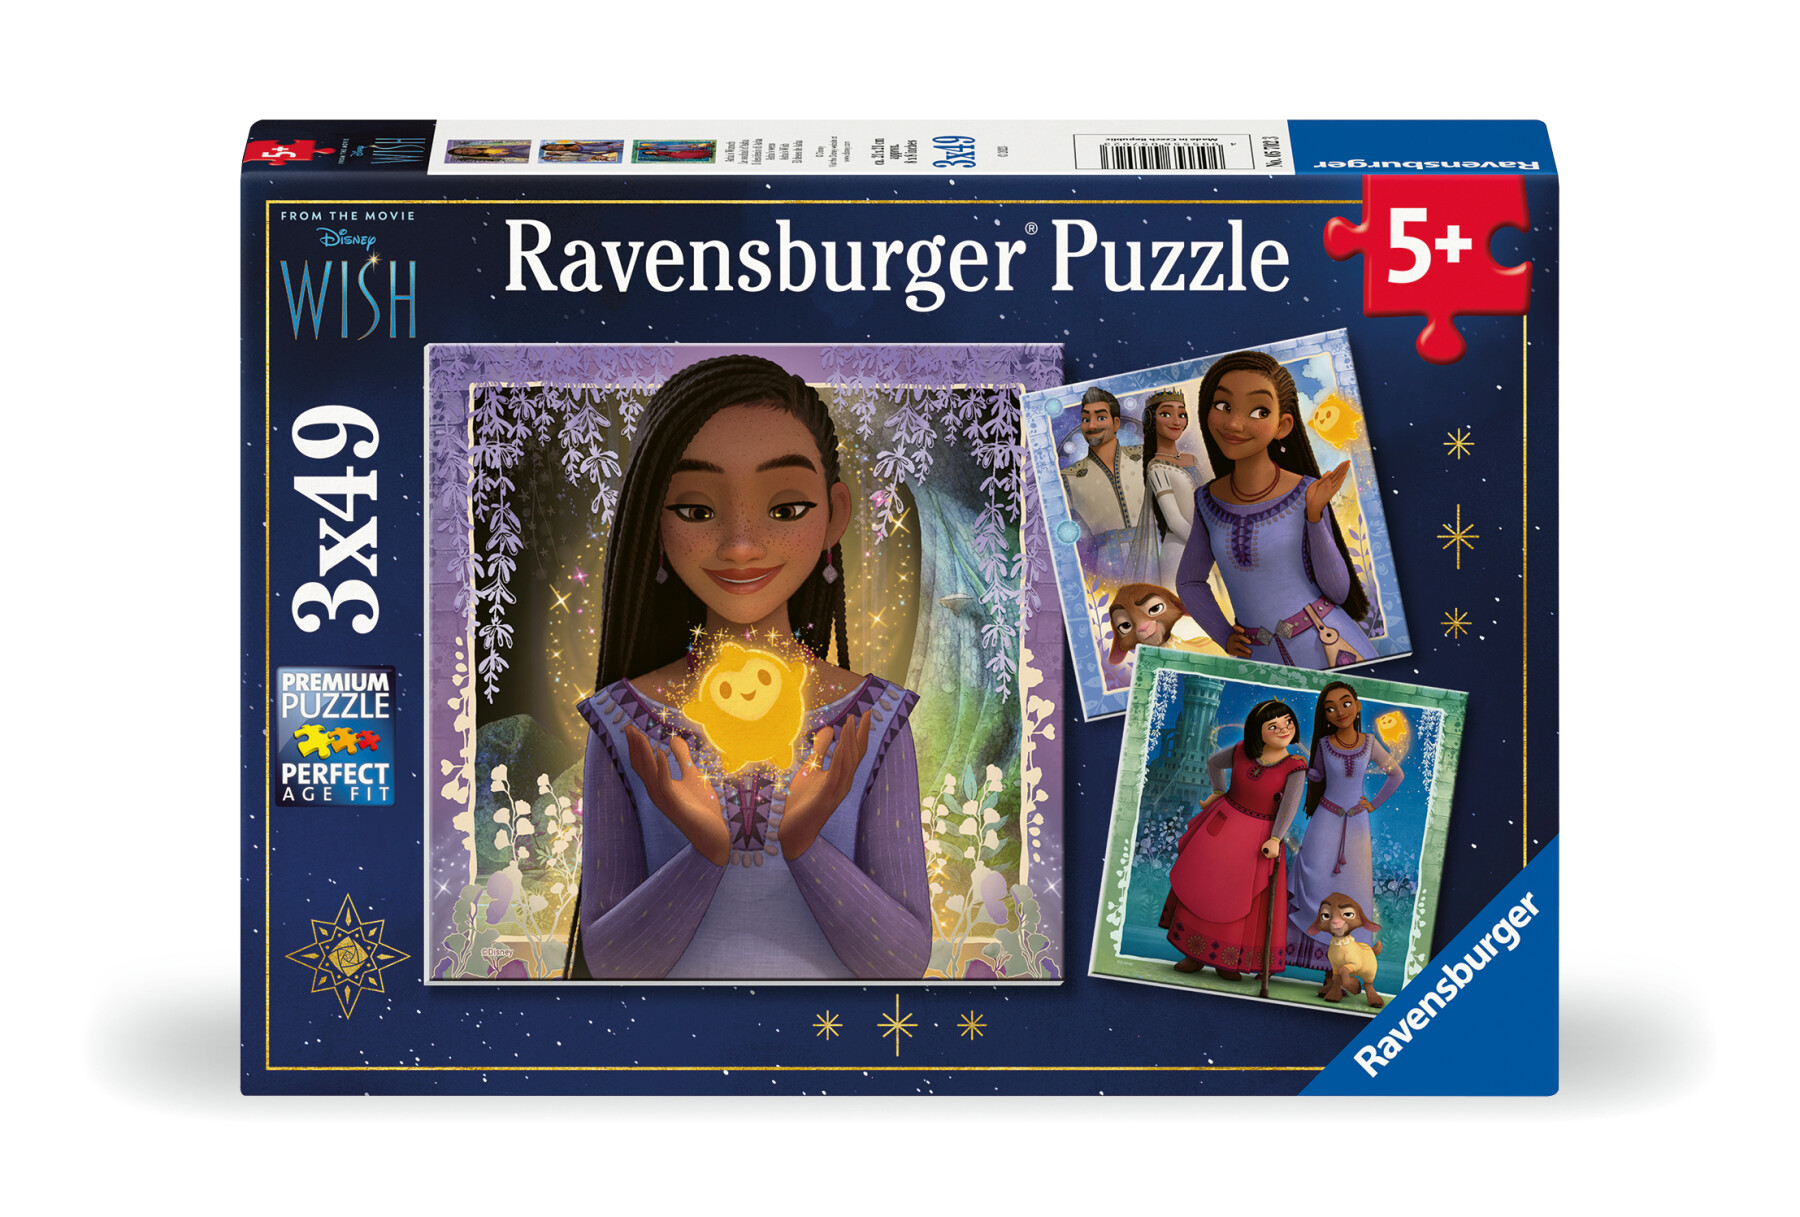 Ravensburger - puzzle wish, collezione 3x49, 3 puzzle da 49 pezzi, età raccomandata 5+ anni - DISNEY PRINCESS, RAVENSBURGER, WISH